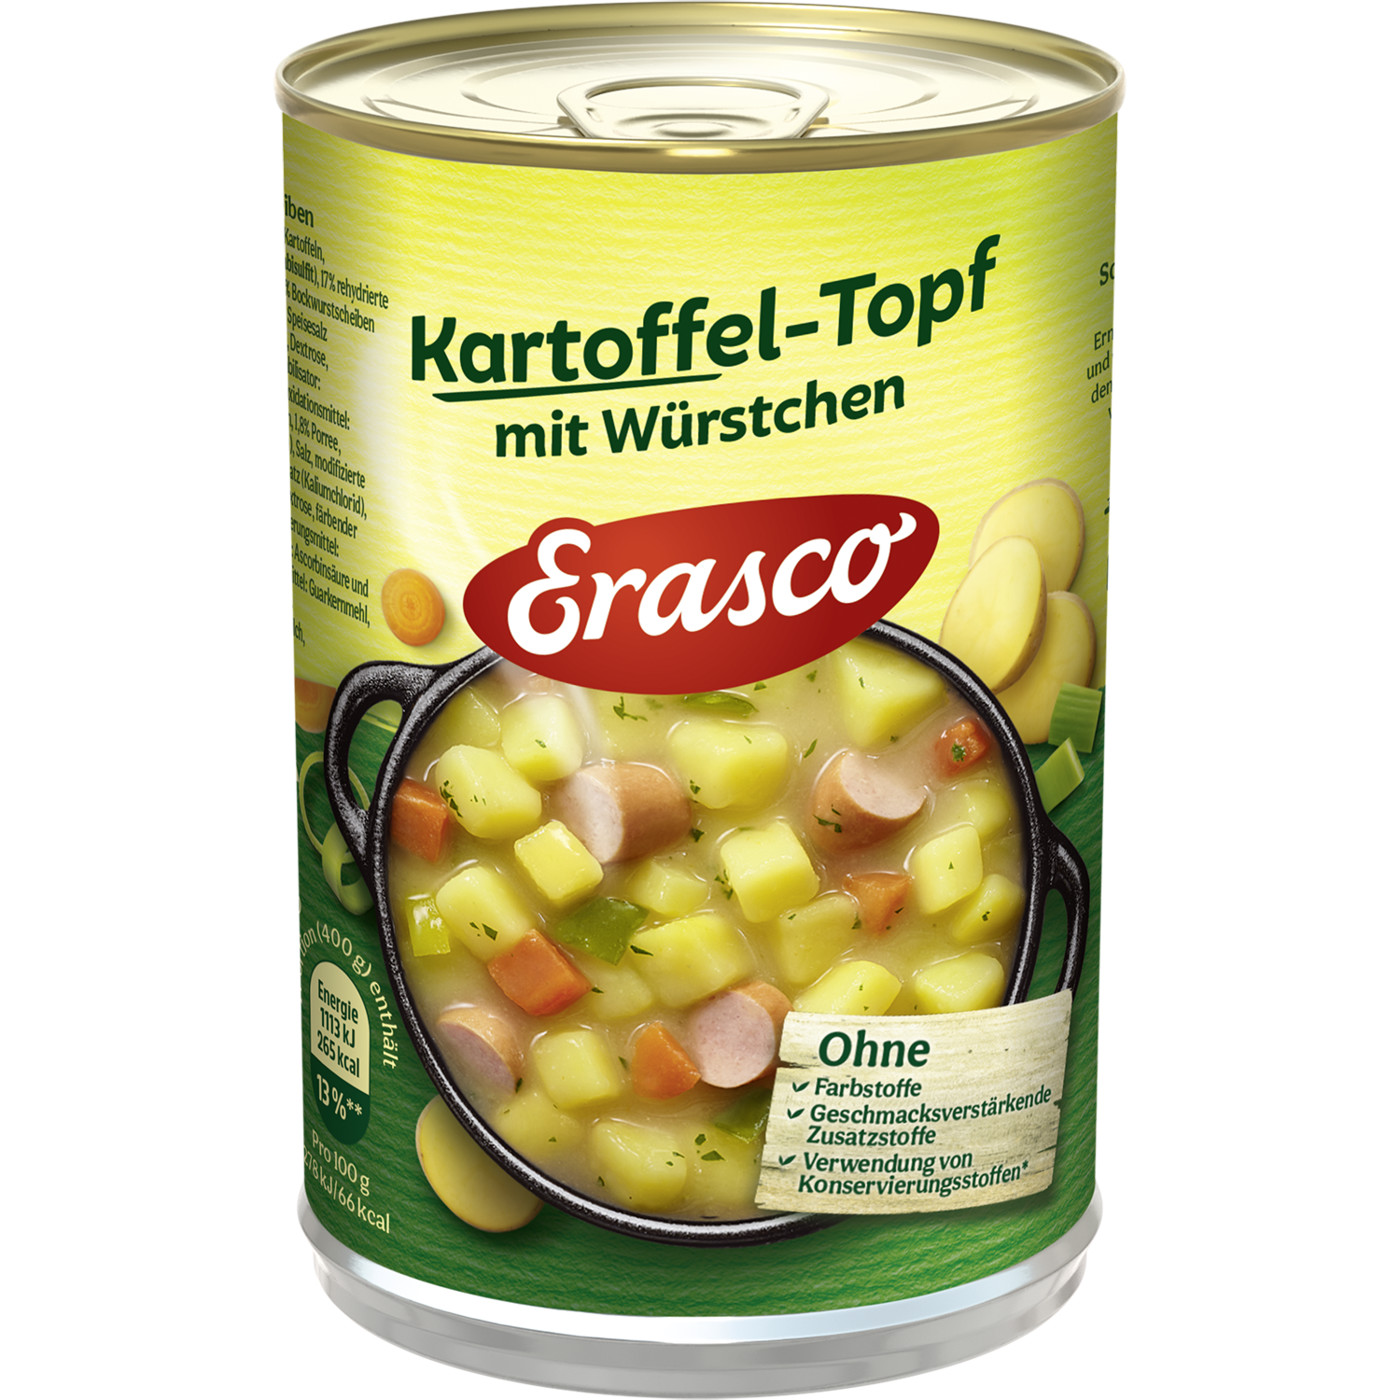 Erasco 1 Portion Kartoffel-Topf mit Würstchen 400G